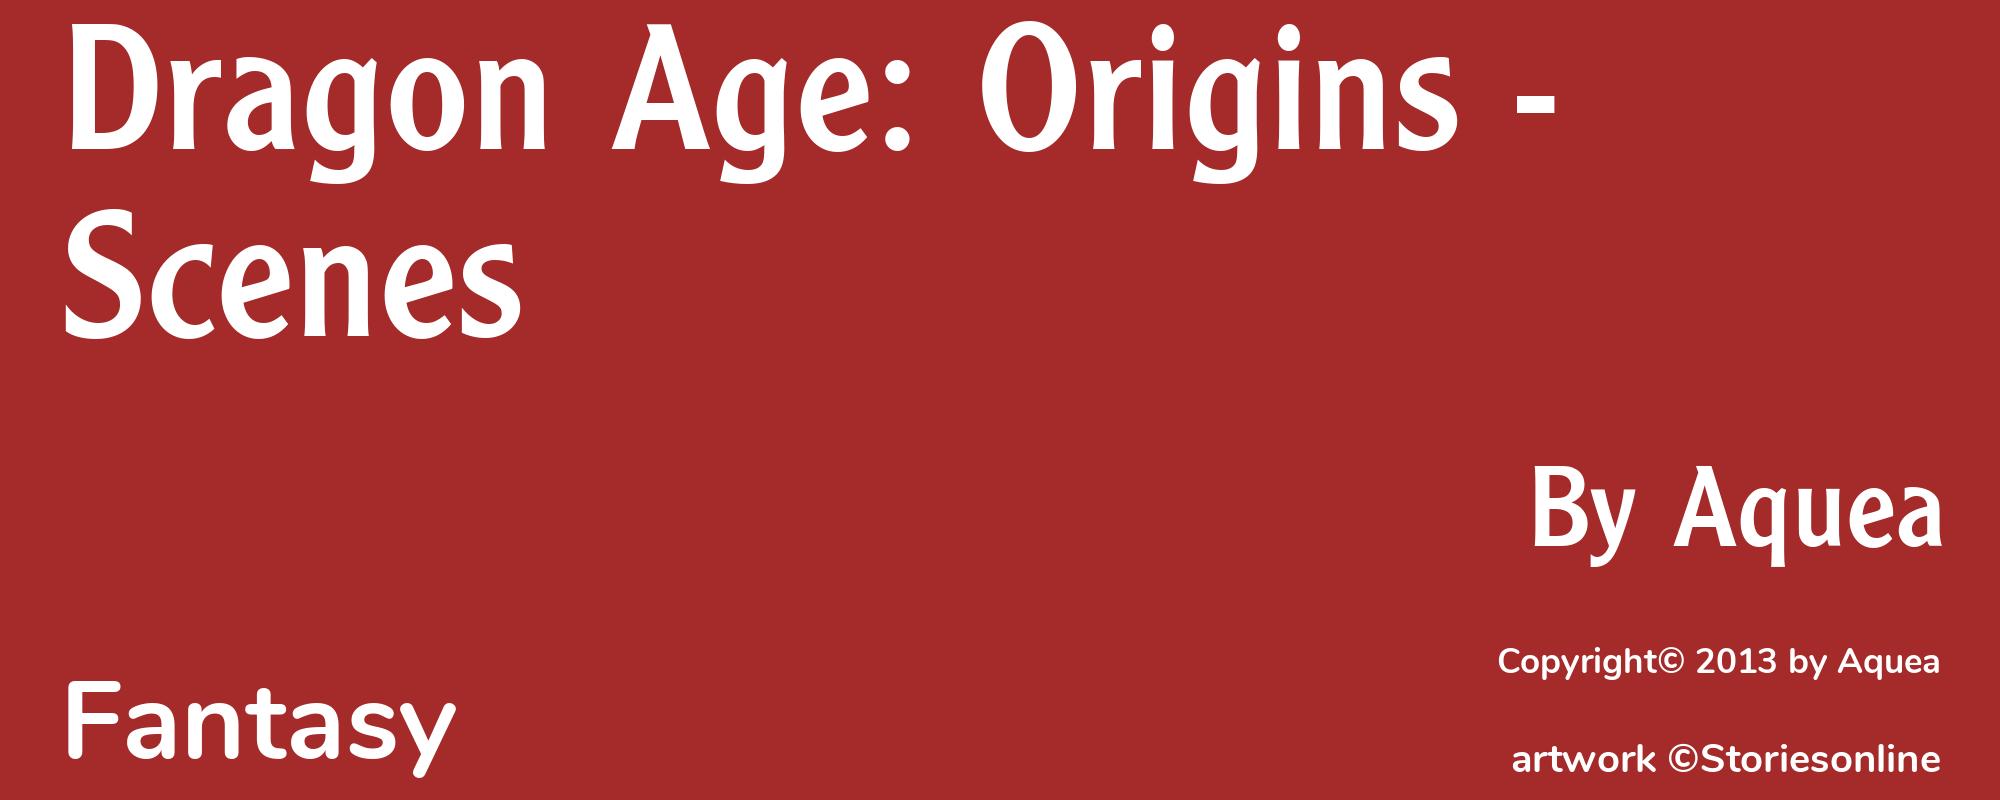 Dragon Age: Origins - Scenes - Cover